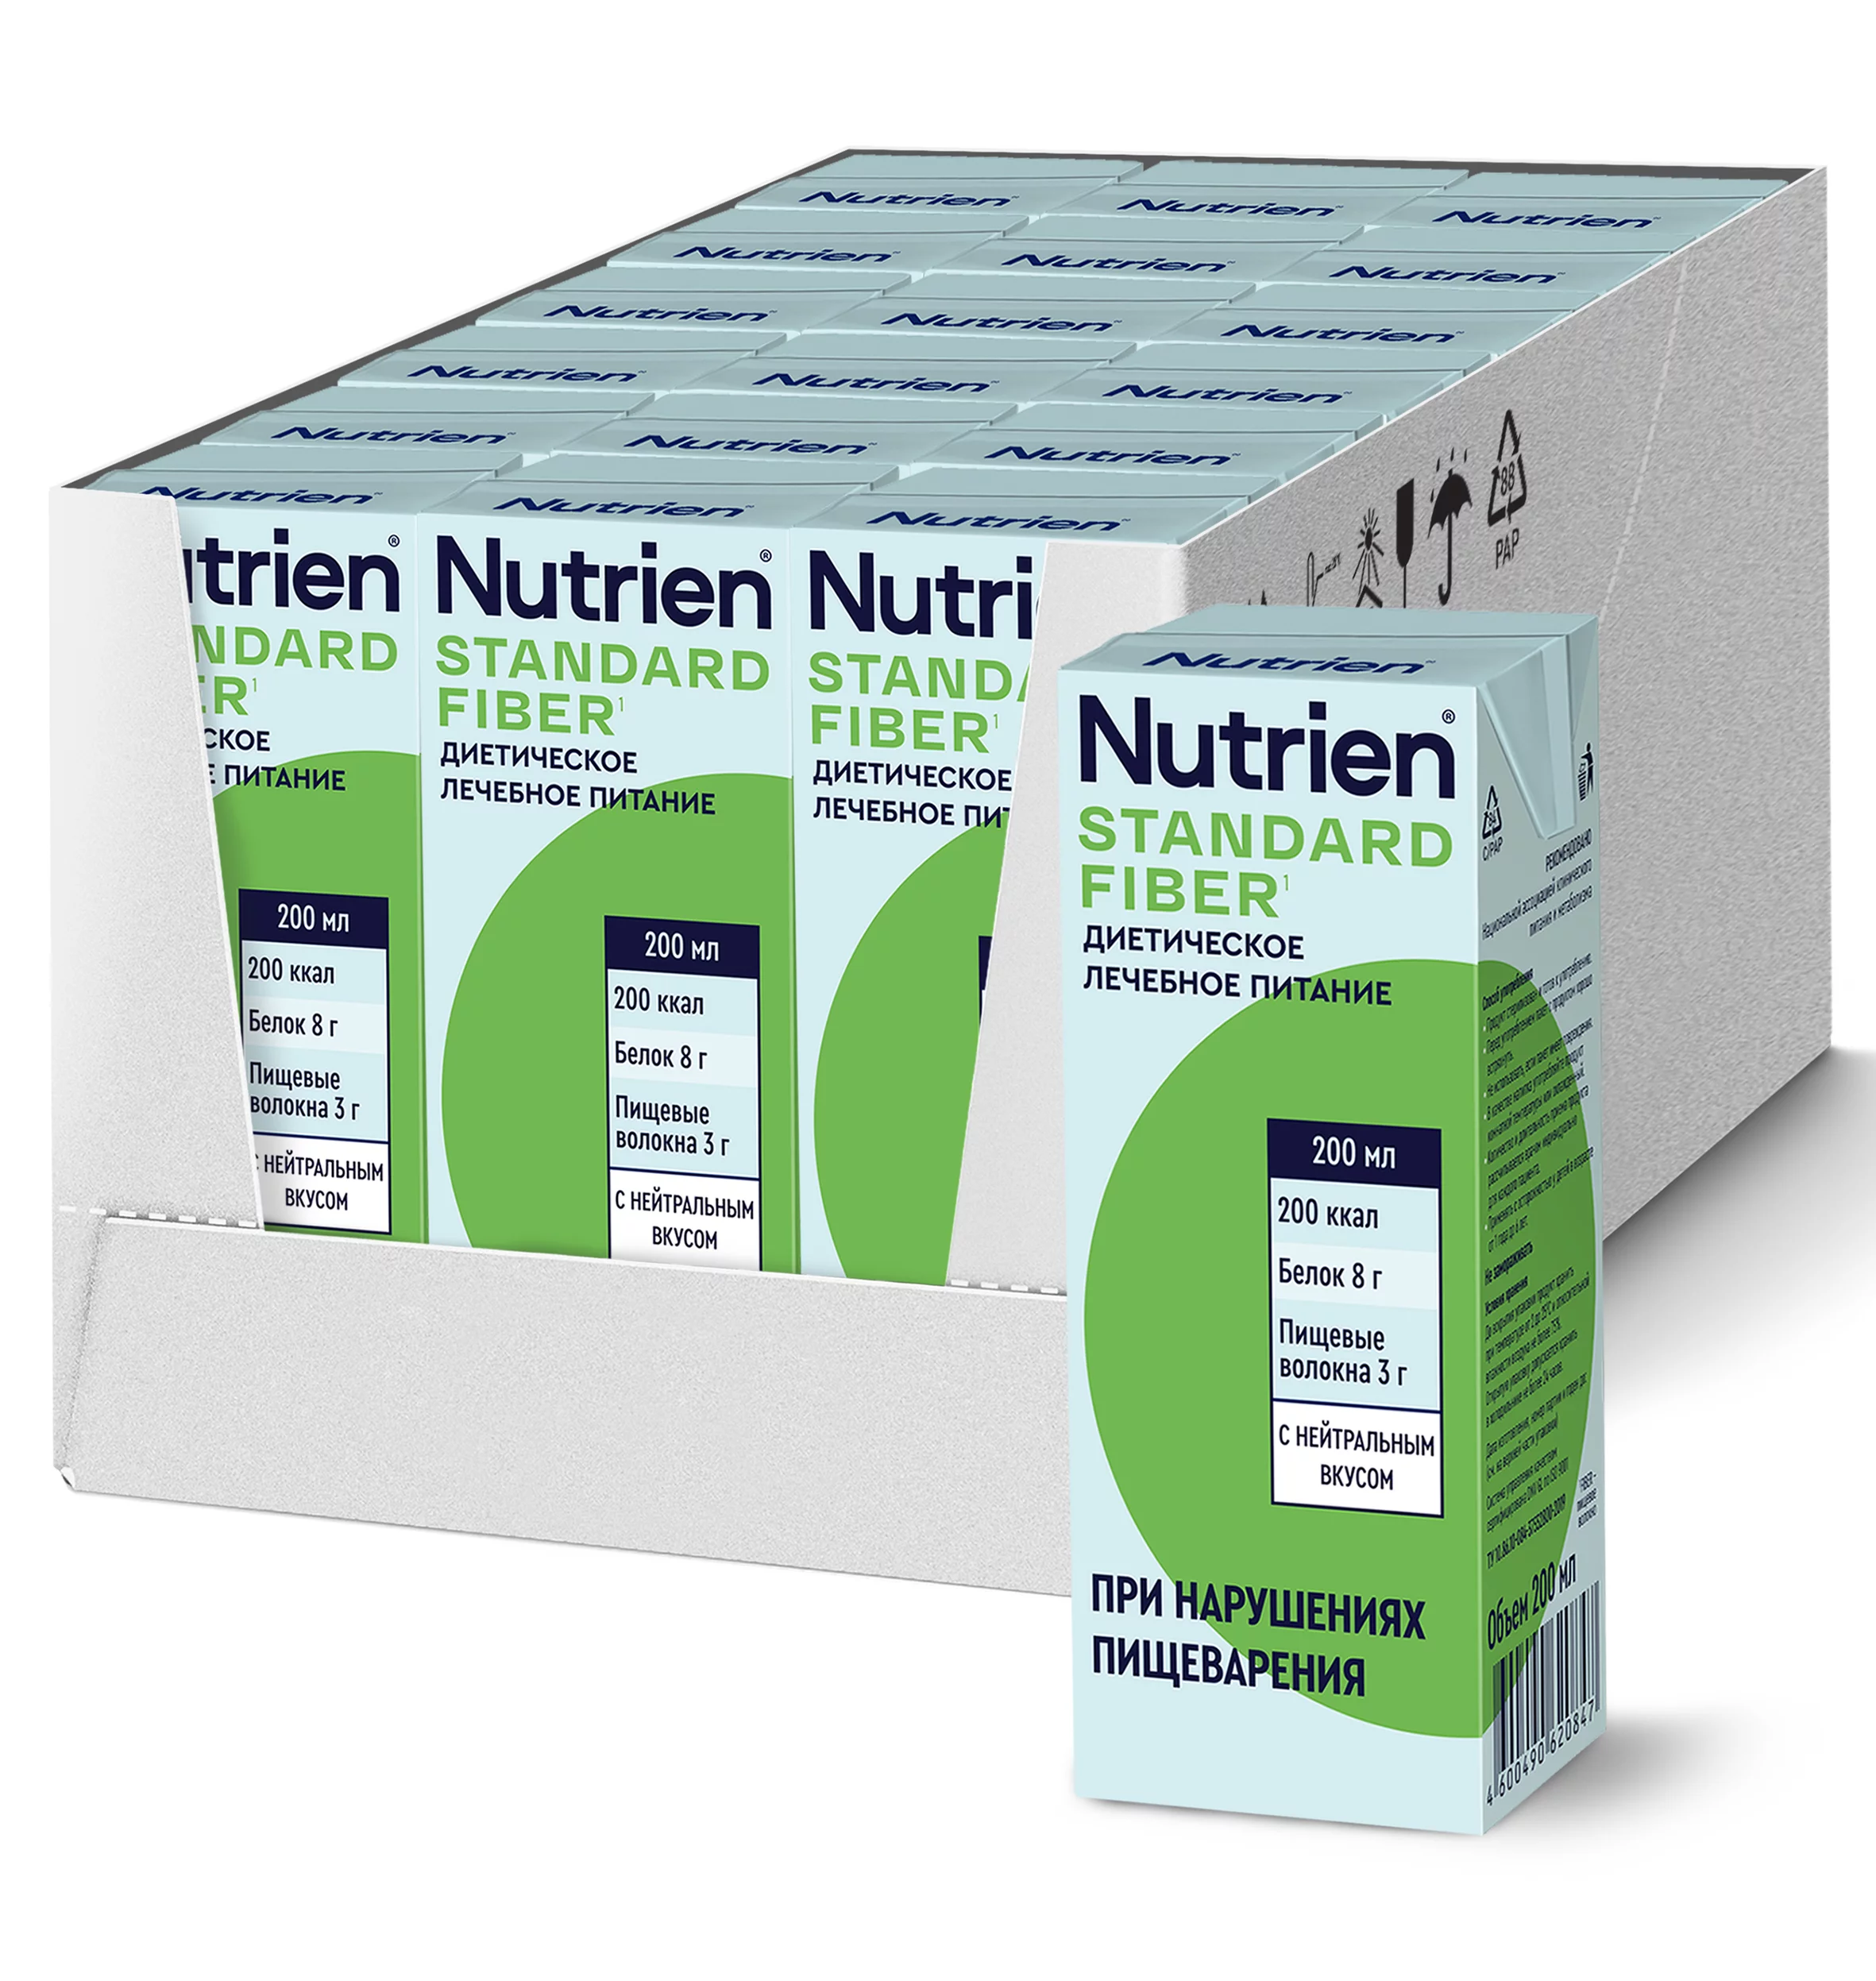 Nutrien Standard Fiber - 19